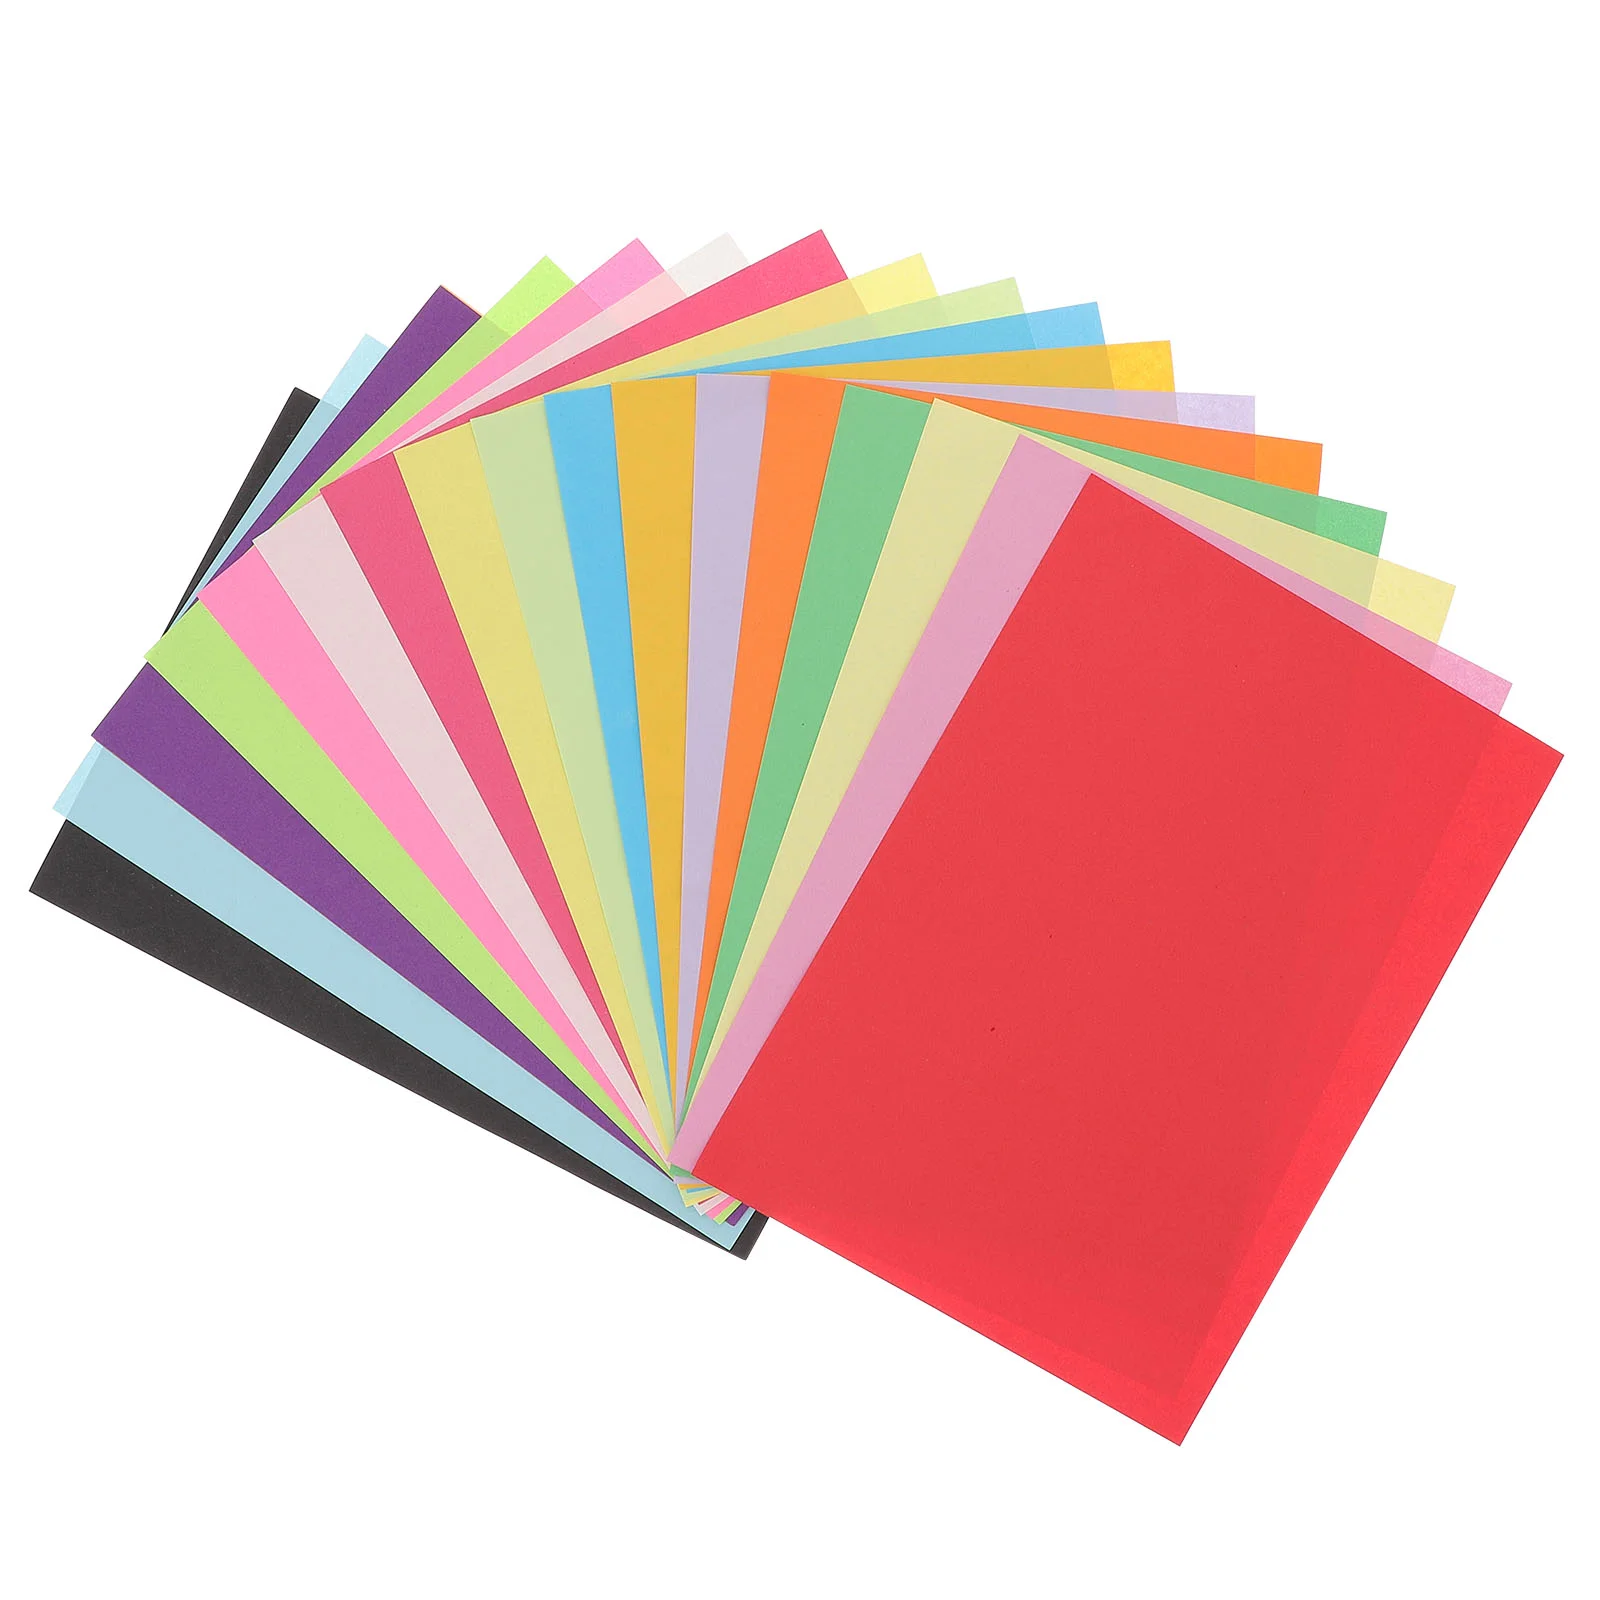 

100 Пастельная Бумага Для Копирования Бумага разноцветная Радужная фотобумага идеально подходит для школы и творческих проектов Размер A4